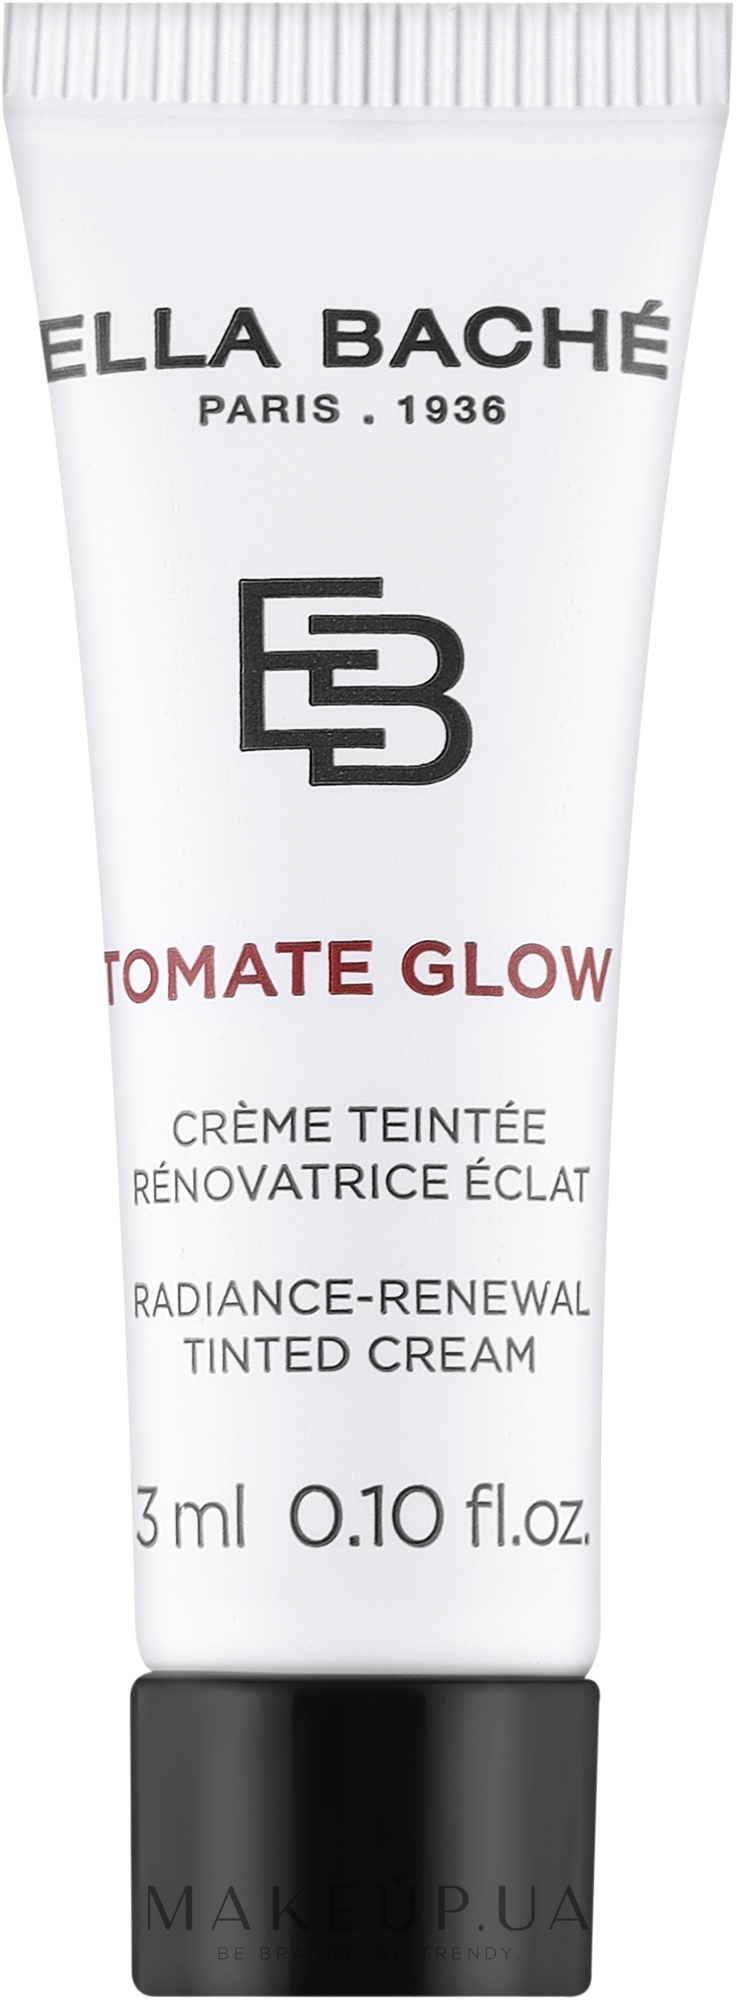 Крем-тинт для сияния кожи - Ella Bache Tomate Glow Radiance-Renewal Tinted Cream (пробник) — фото 3ml